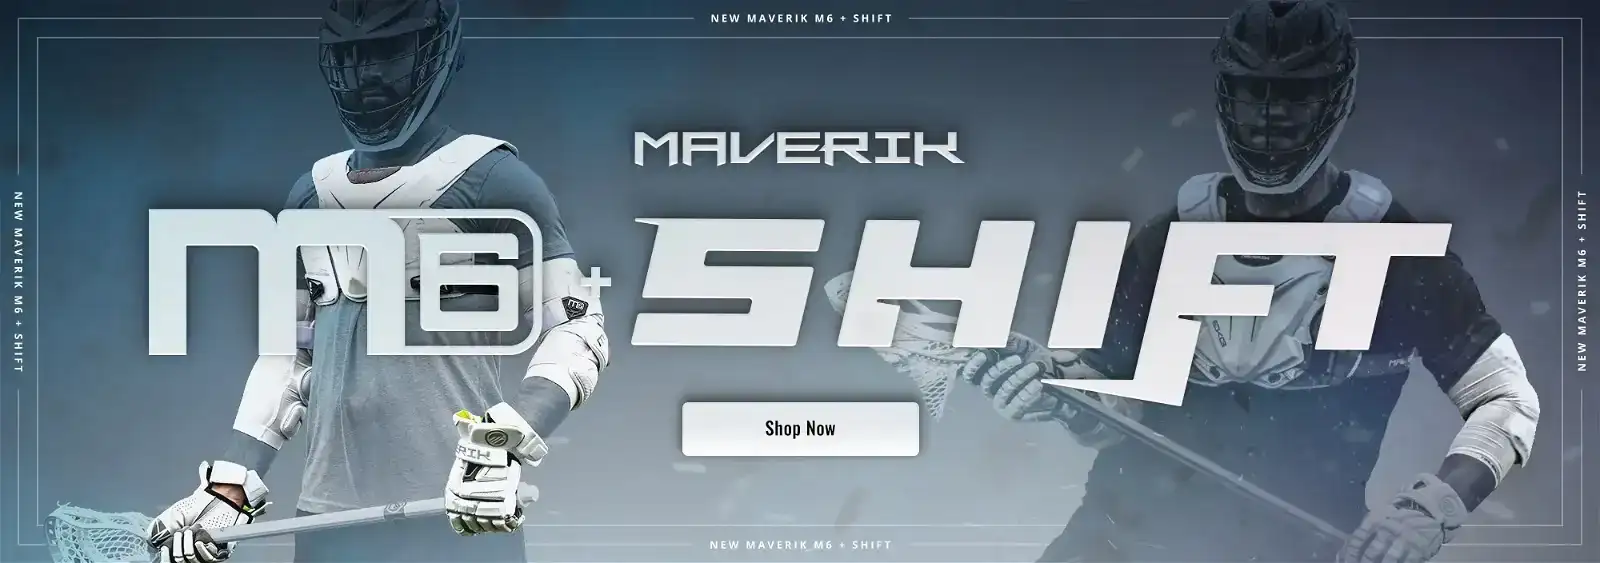 Maverik M6 & Maverik Shift Lacrosse Equipment